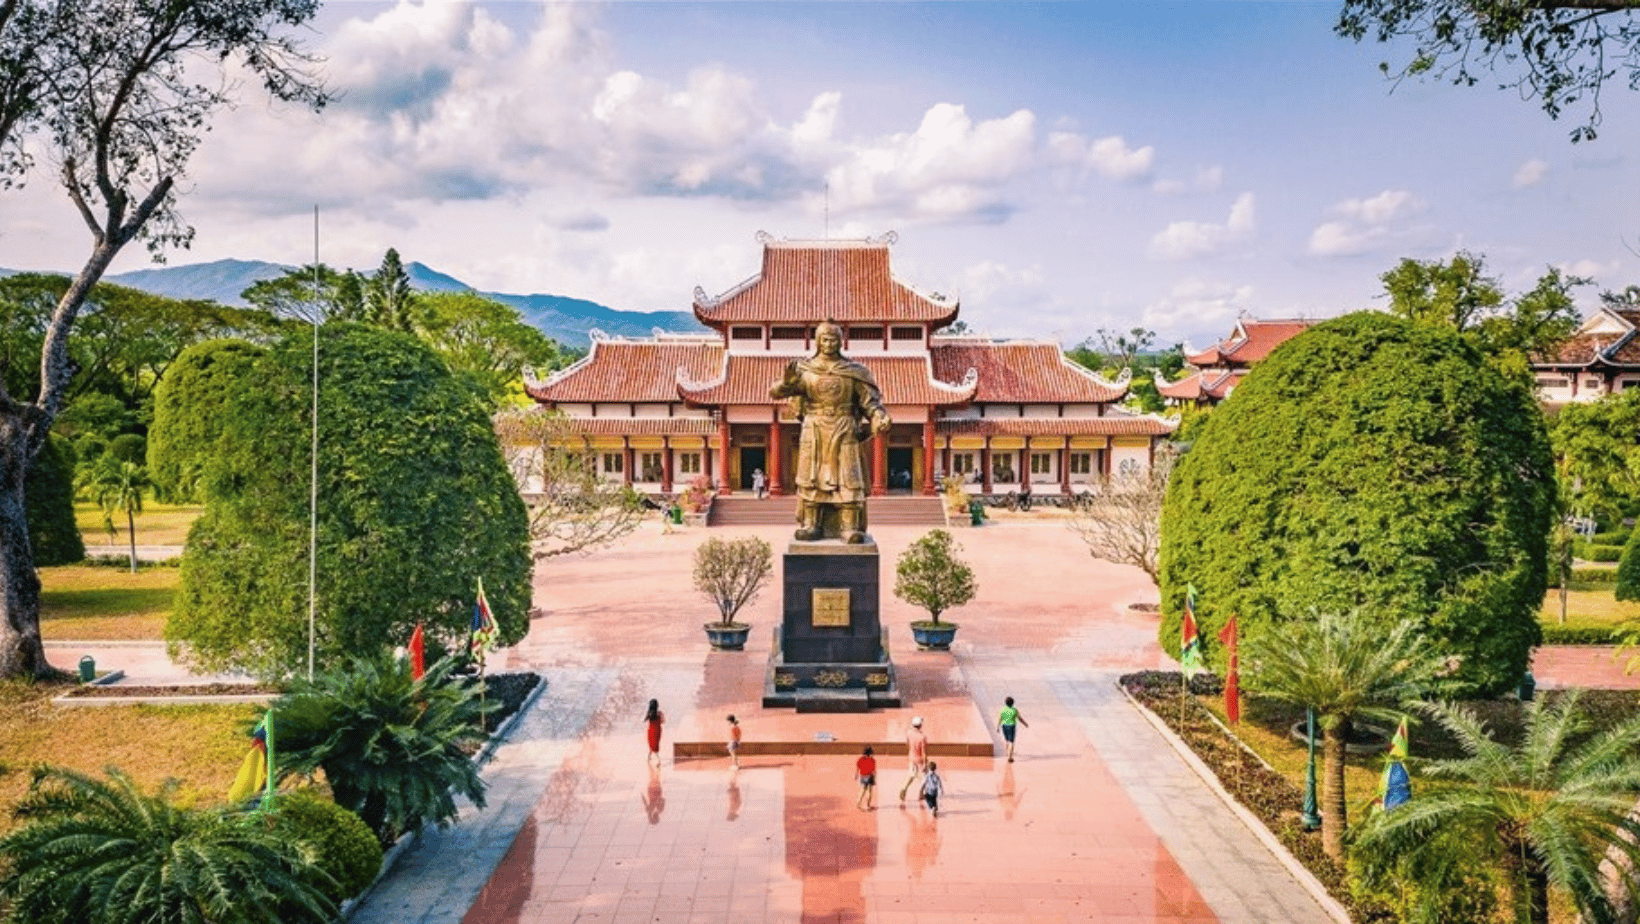 Giá vé các điểm tham quan du lịch Quy Nhơn tại Bảo Tàng Quang Trung - Tây Sơn.